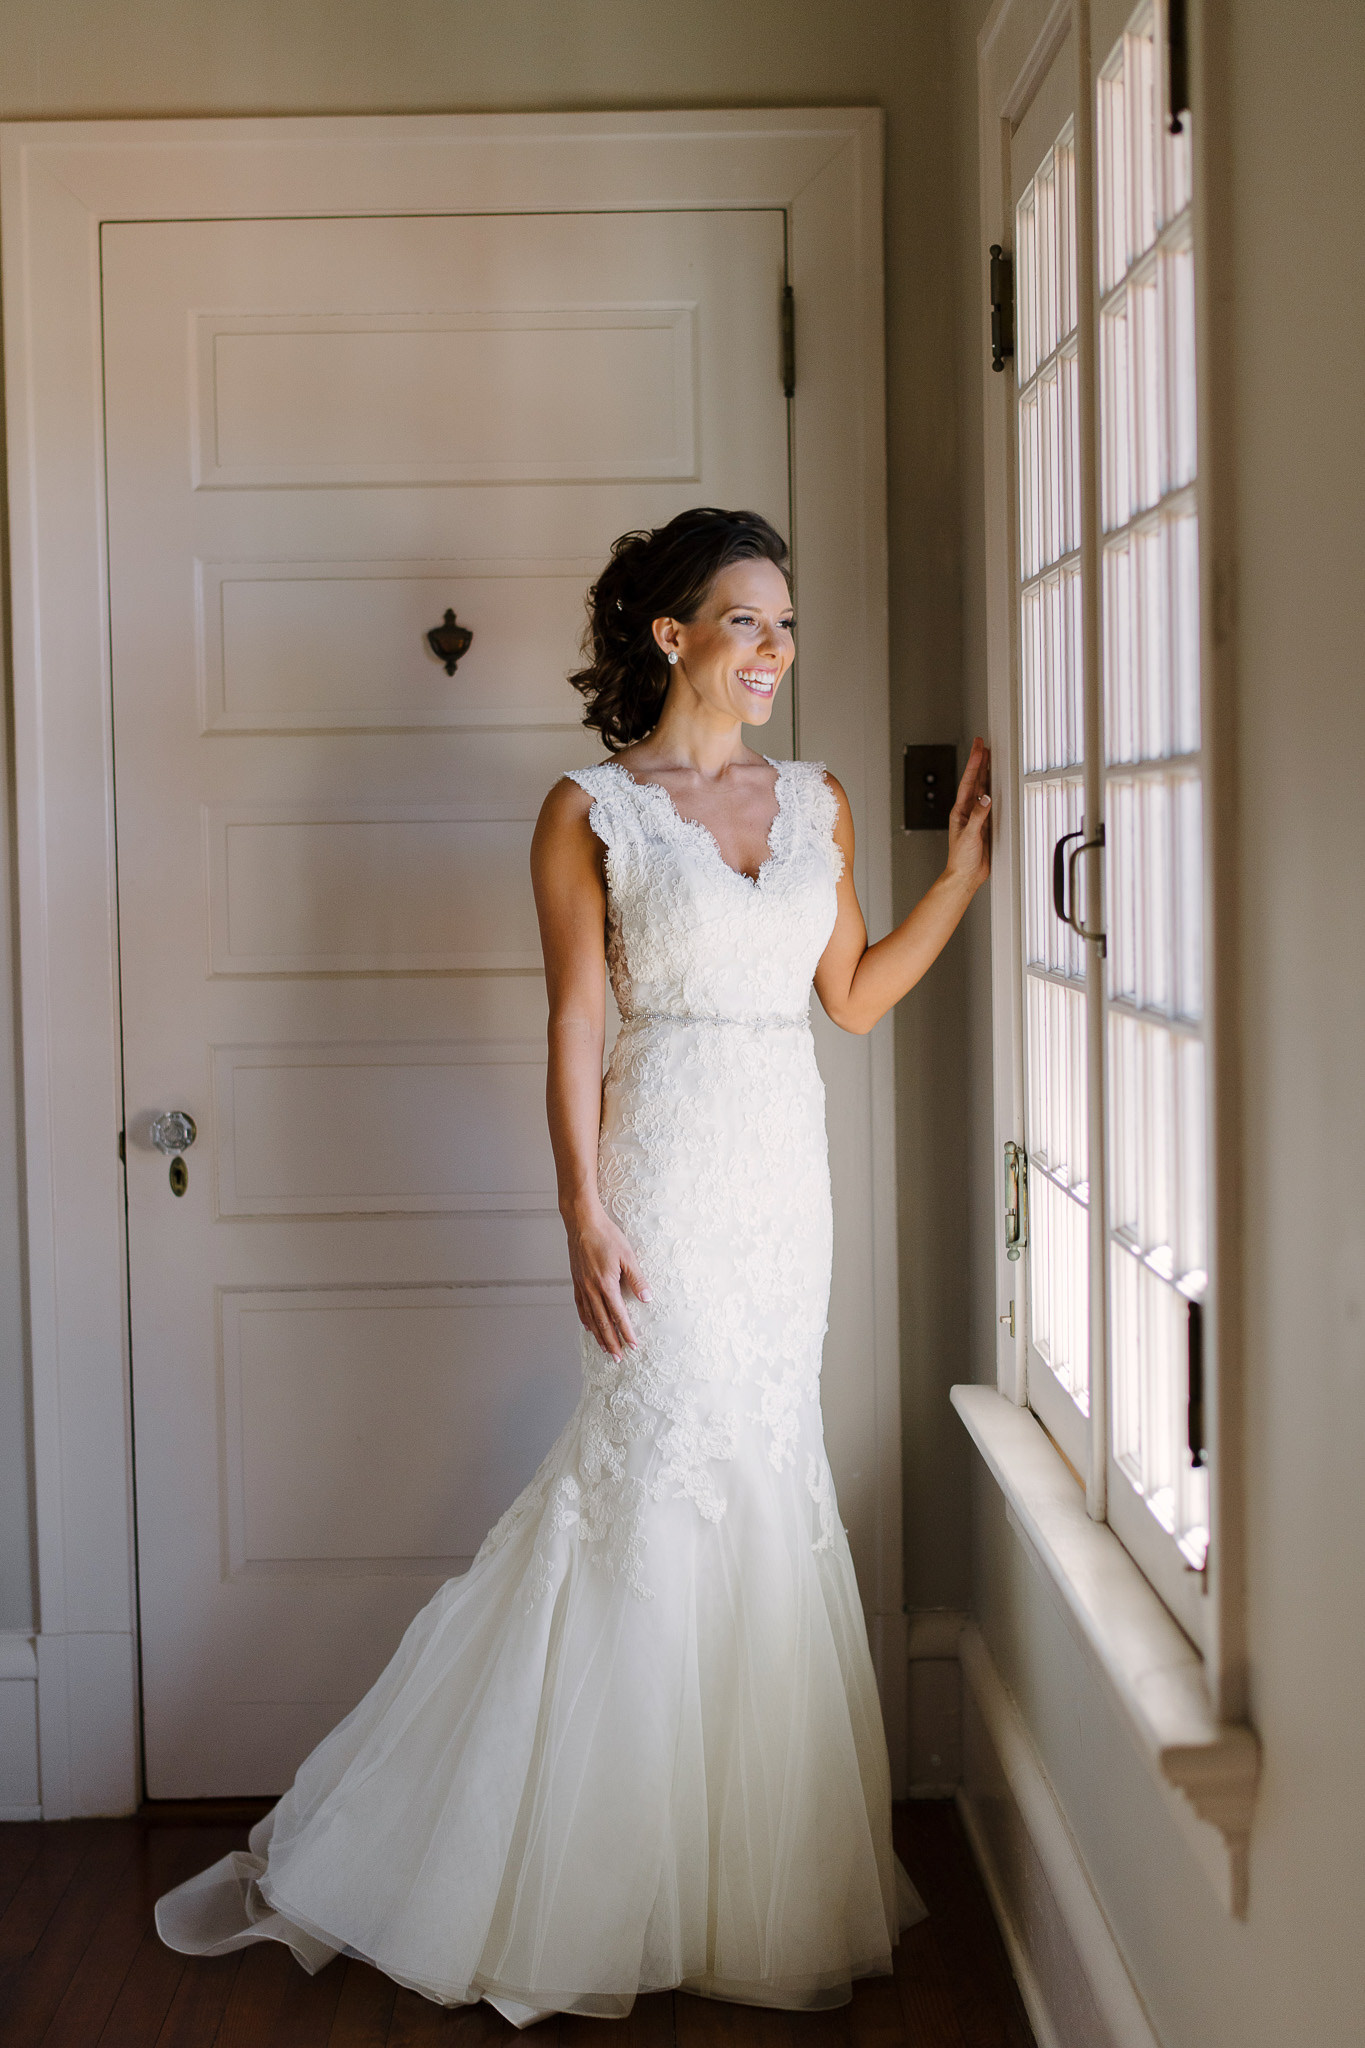 Sunglow Photography | Florida Wedding Photographer | Holly & Josiah